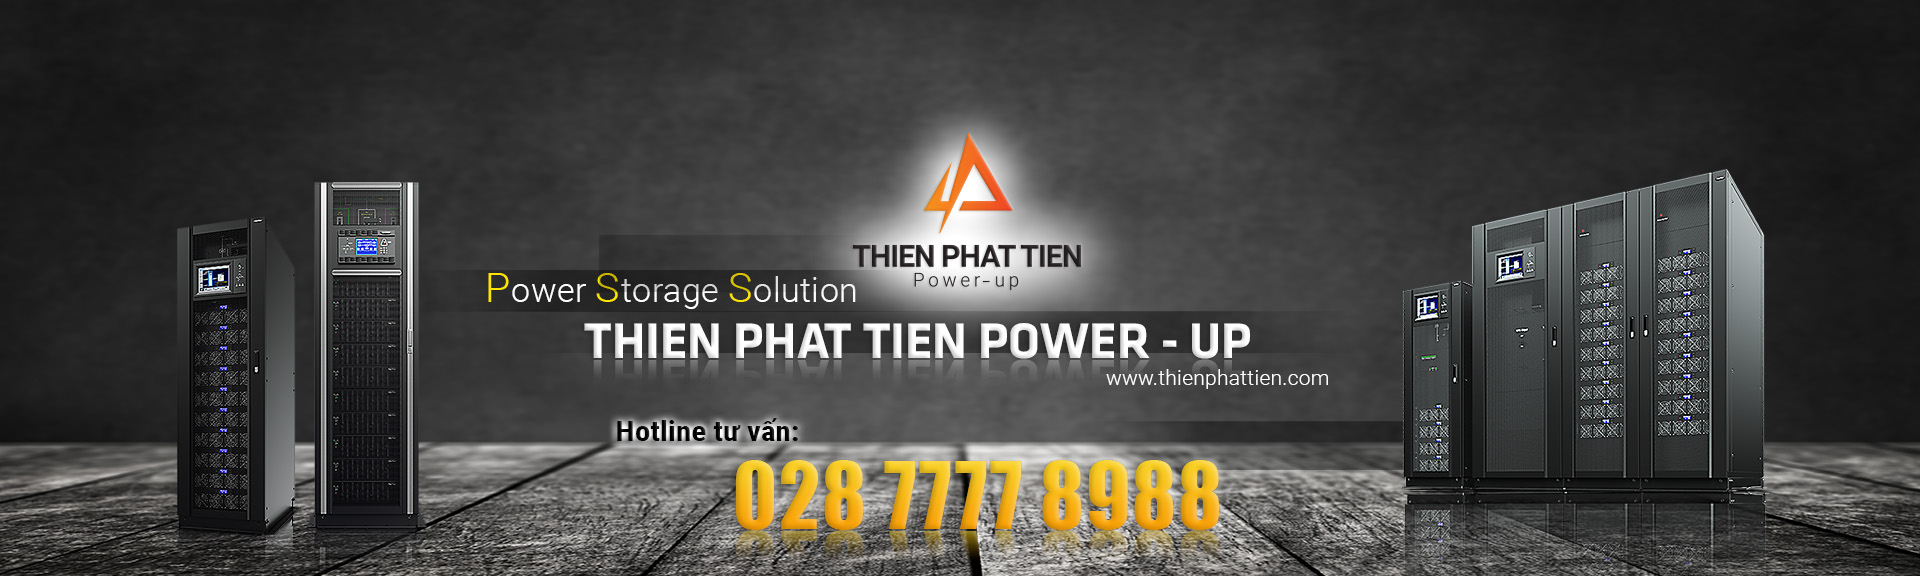 banner thien tien phat power up 02